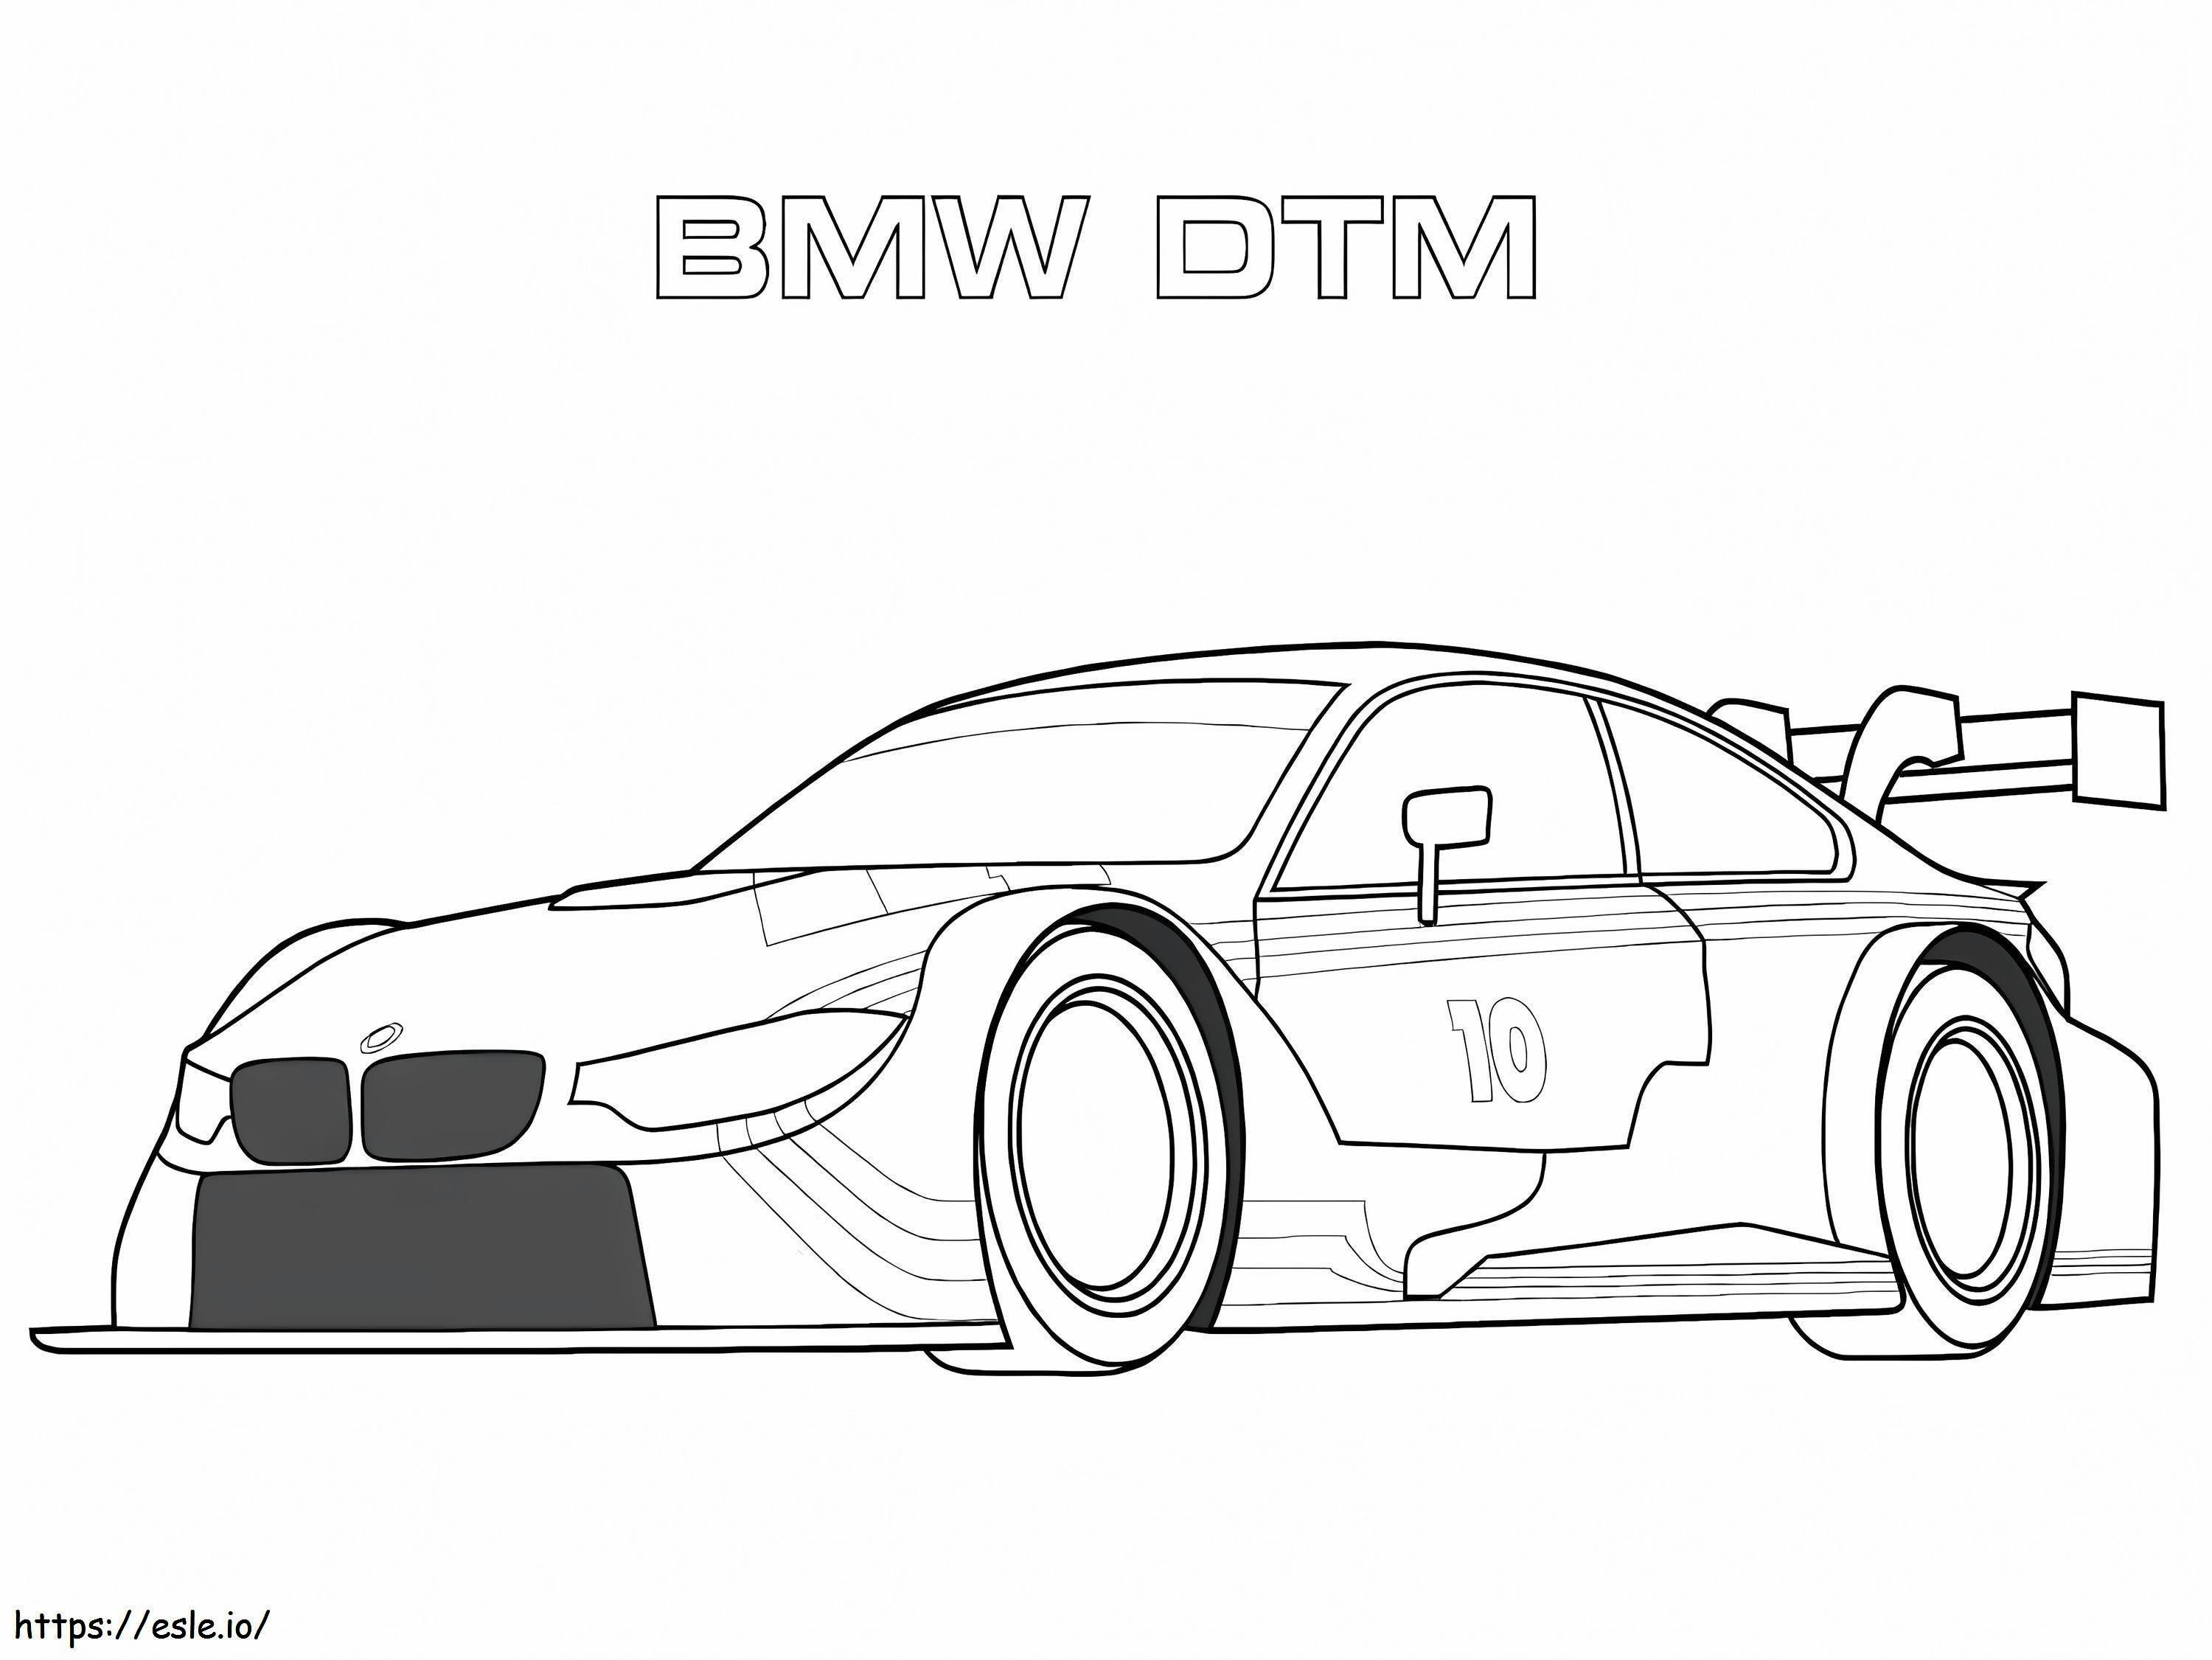 Bmw Dtm-racewagen kleurplaat kleurplaat